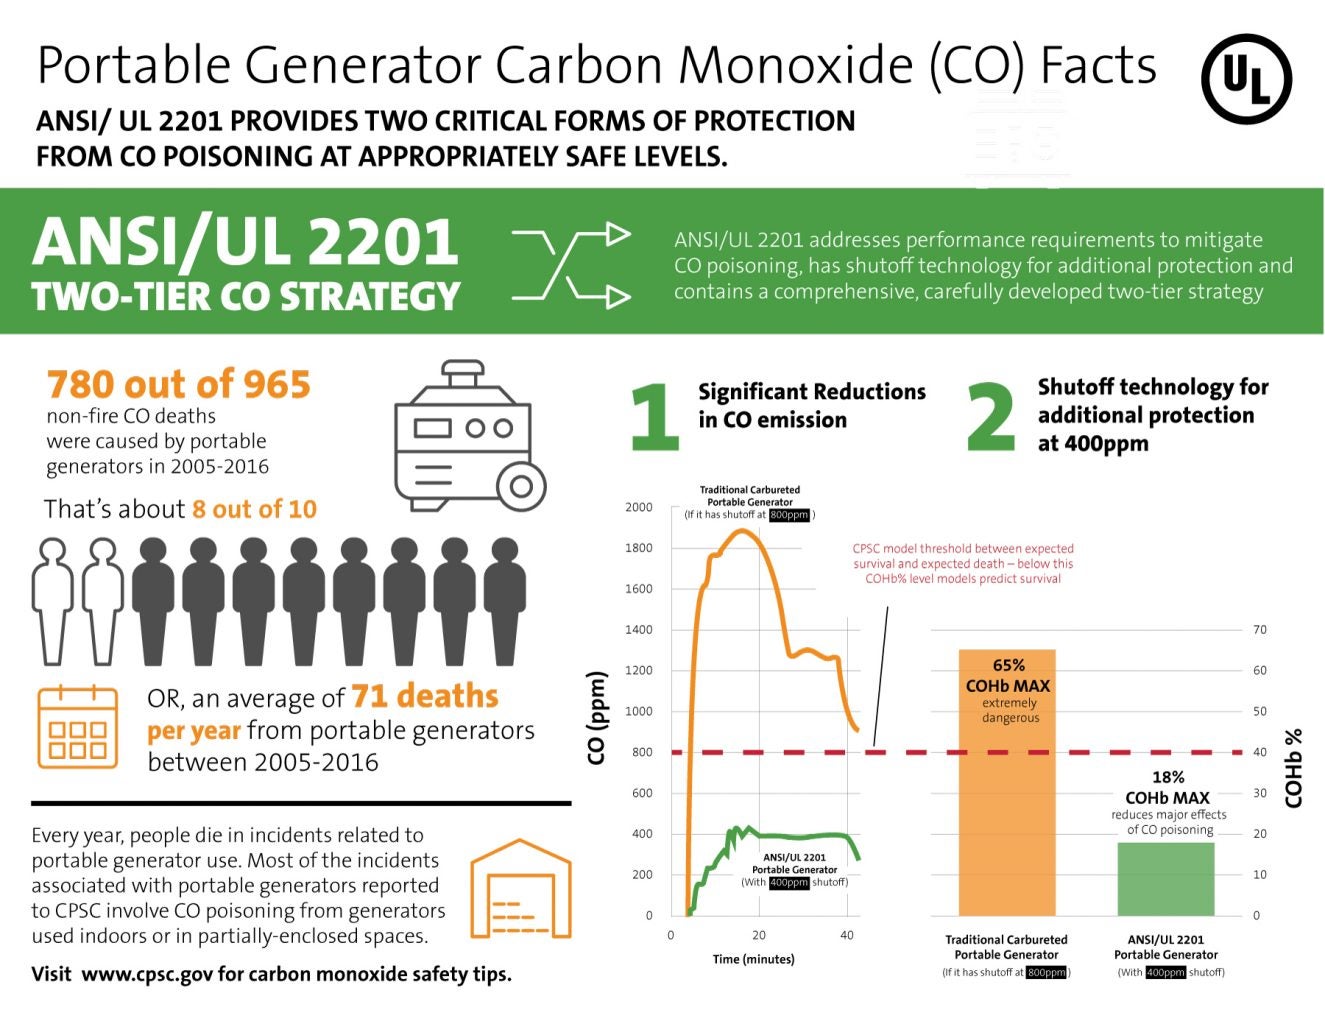 Carbon monoxide facts infographic